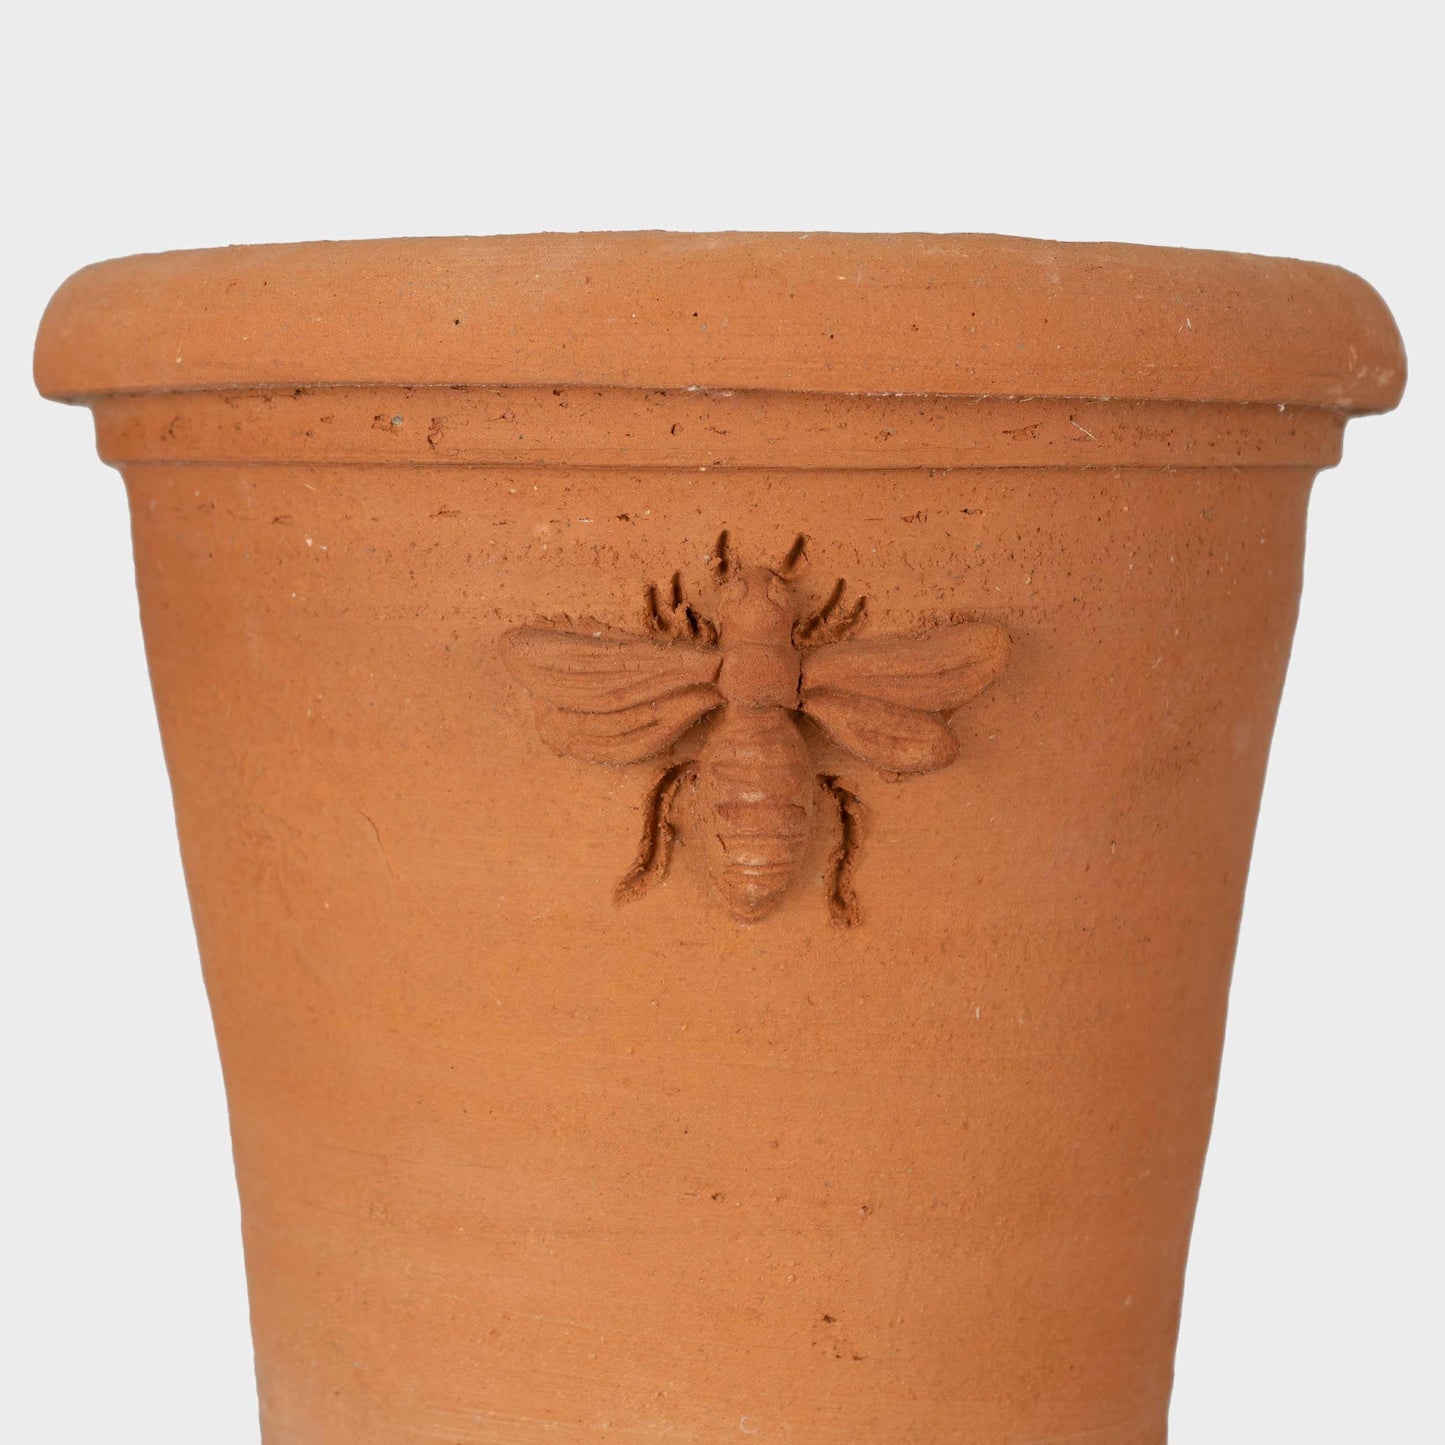 (Waitlist) Gardenheir X Seibert & Rice Terra Cotta Bee Pot in Natural